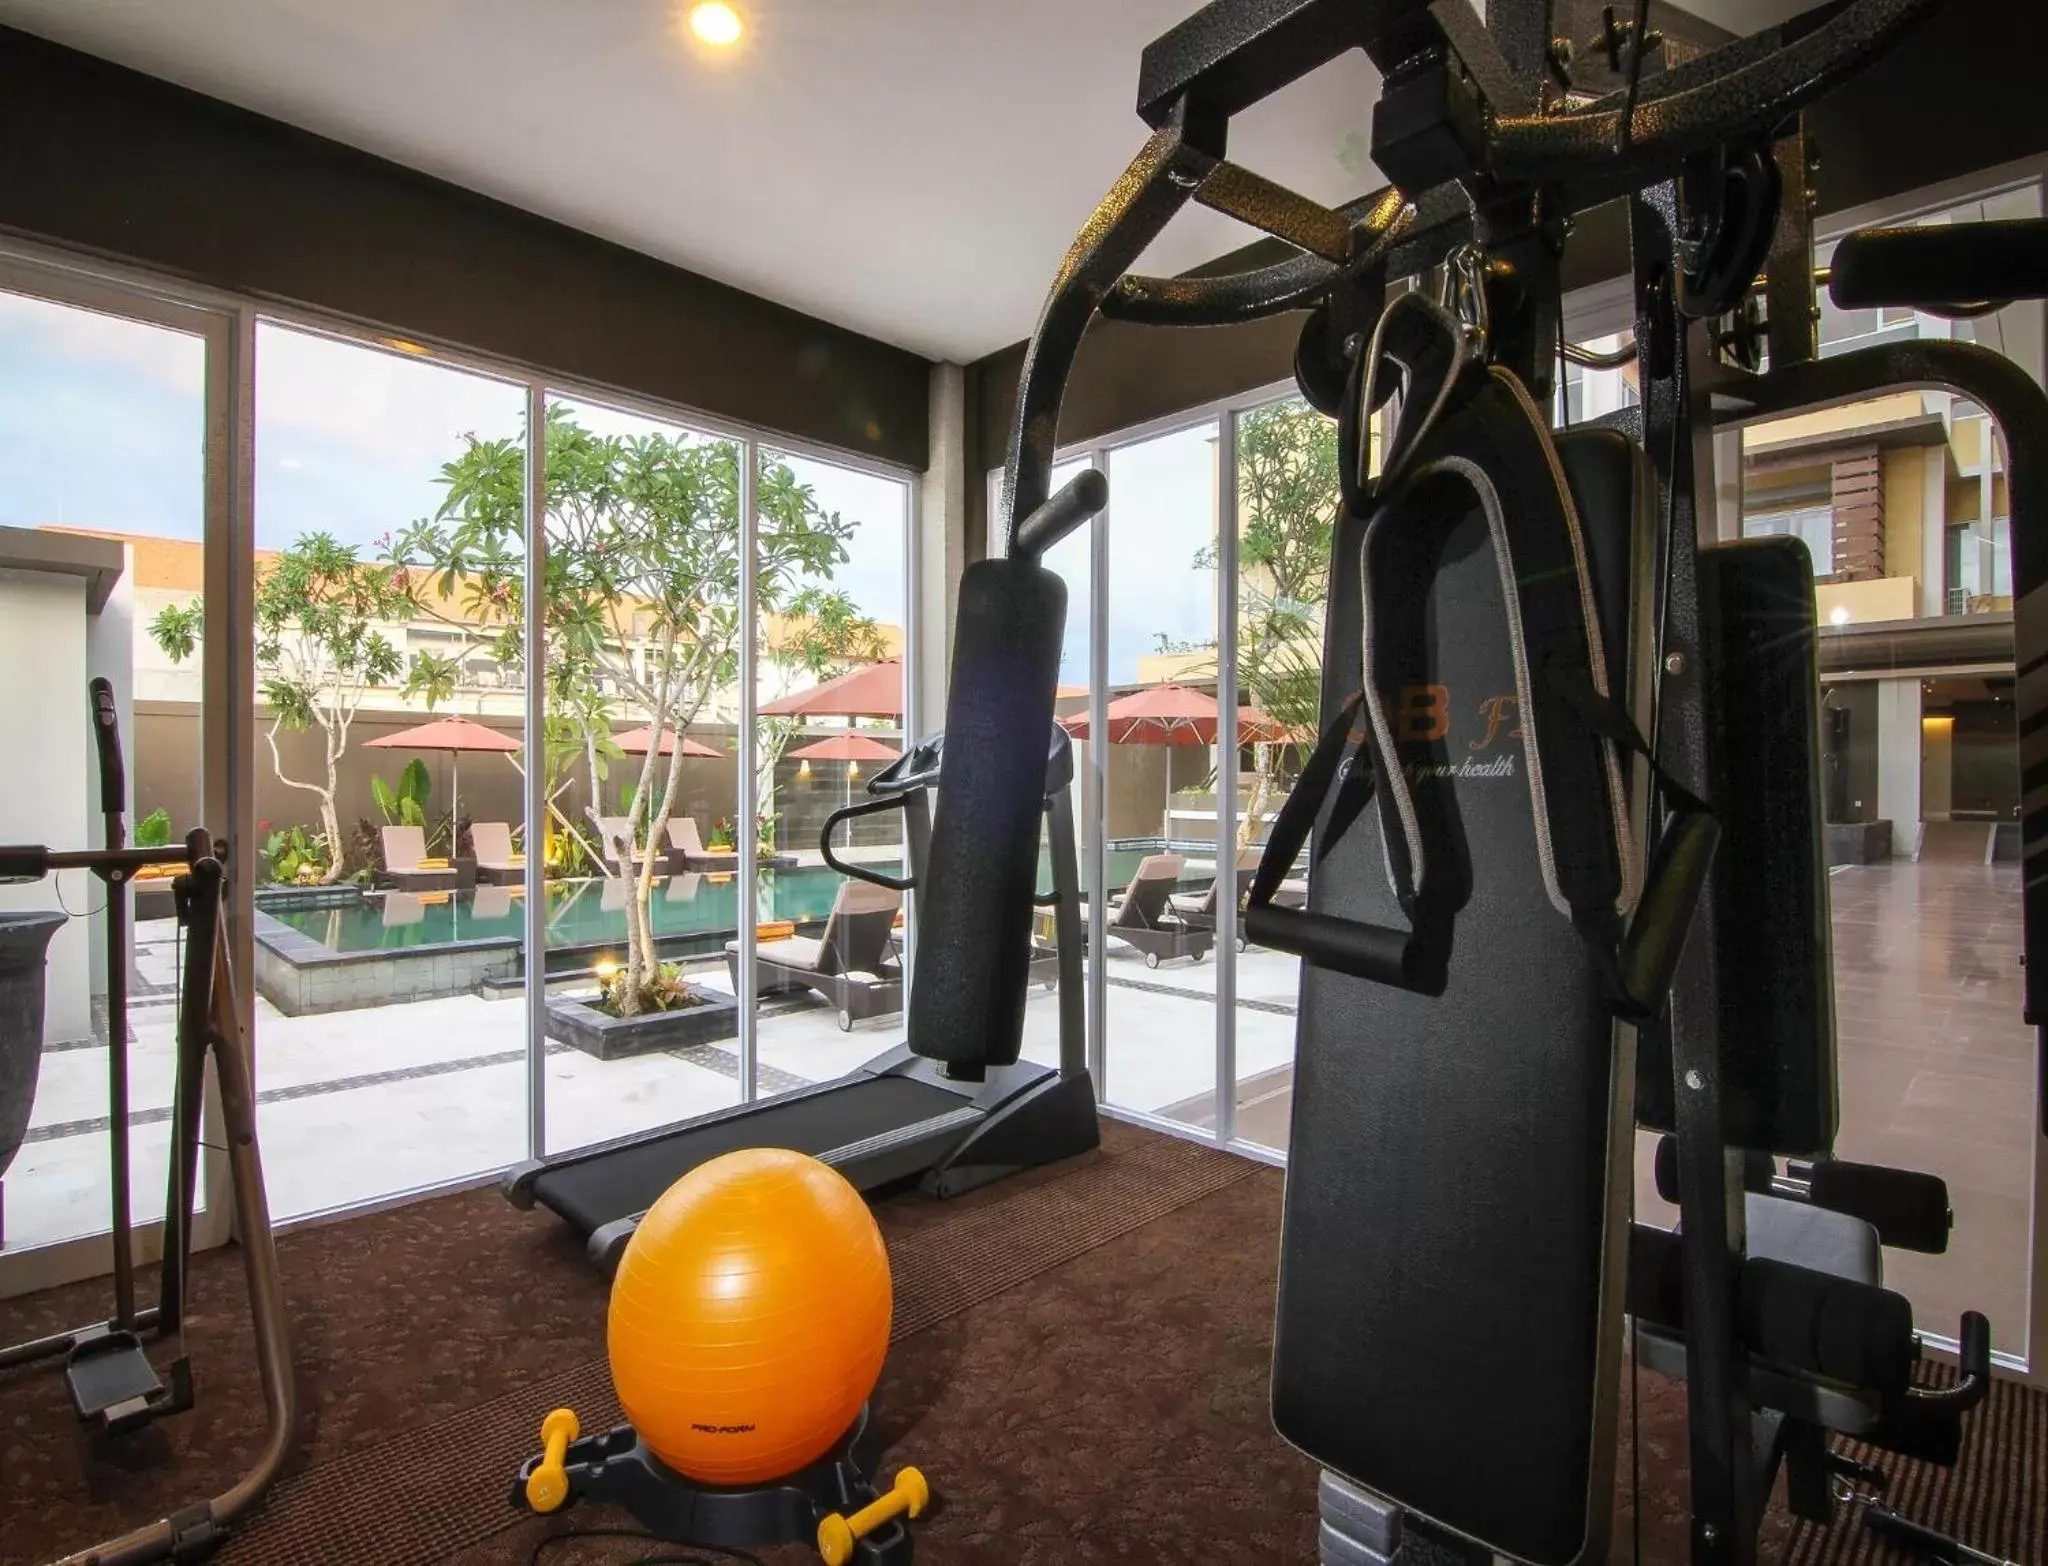 Fitness centre/facilities, Fitness Center/Facilities in The Kana Kuta Hotel